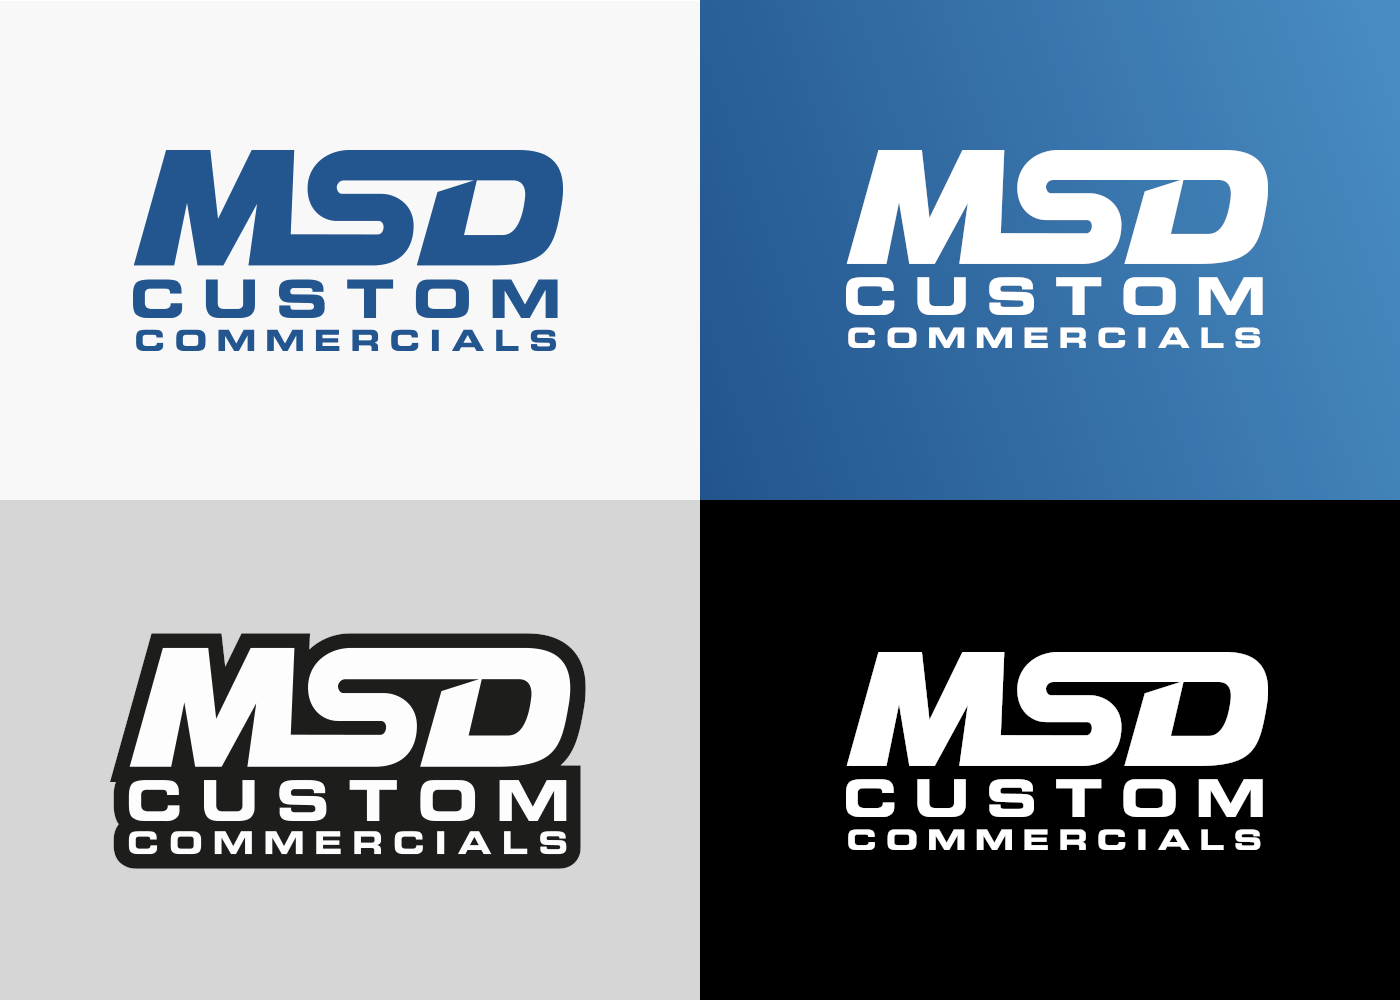 MSD Custom Commercials Logos